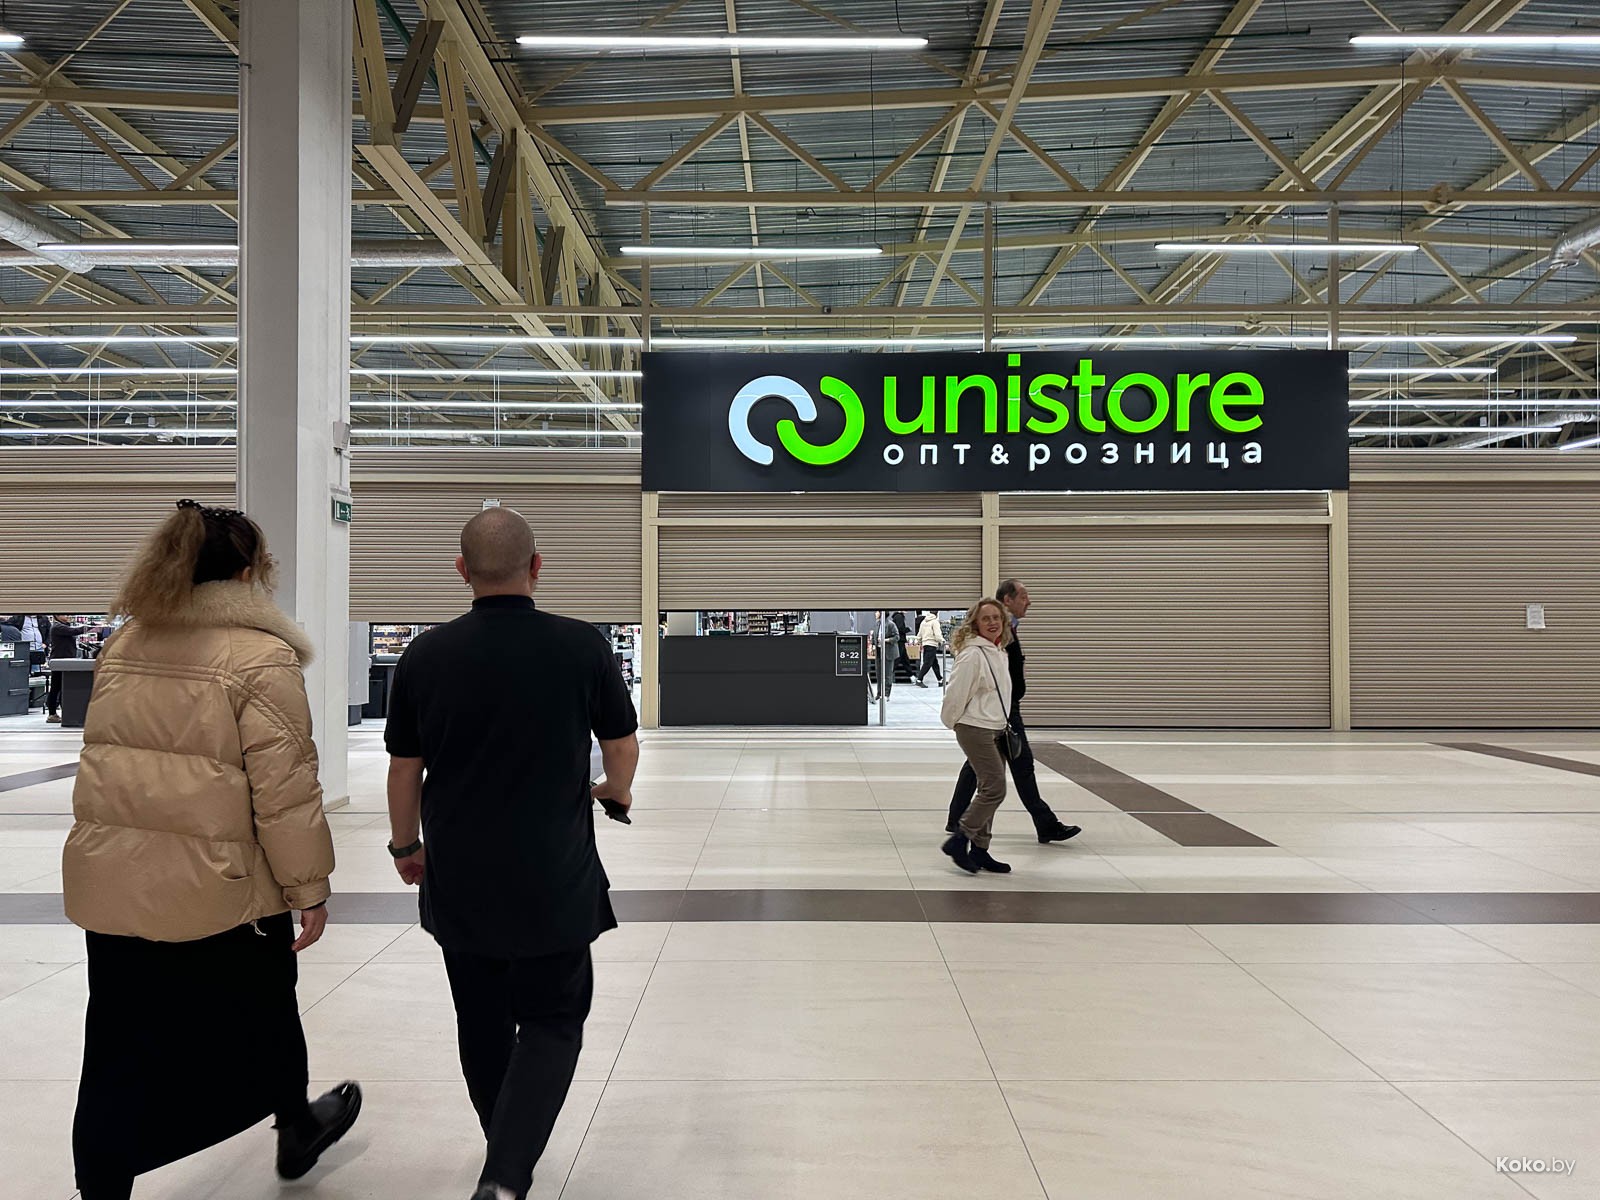 Новый магазин с низкими ценами на товары Unistore открылся в ТЦ Сенница.  Новый огромный магазин Юнистор в Минске